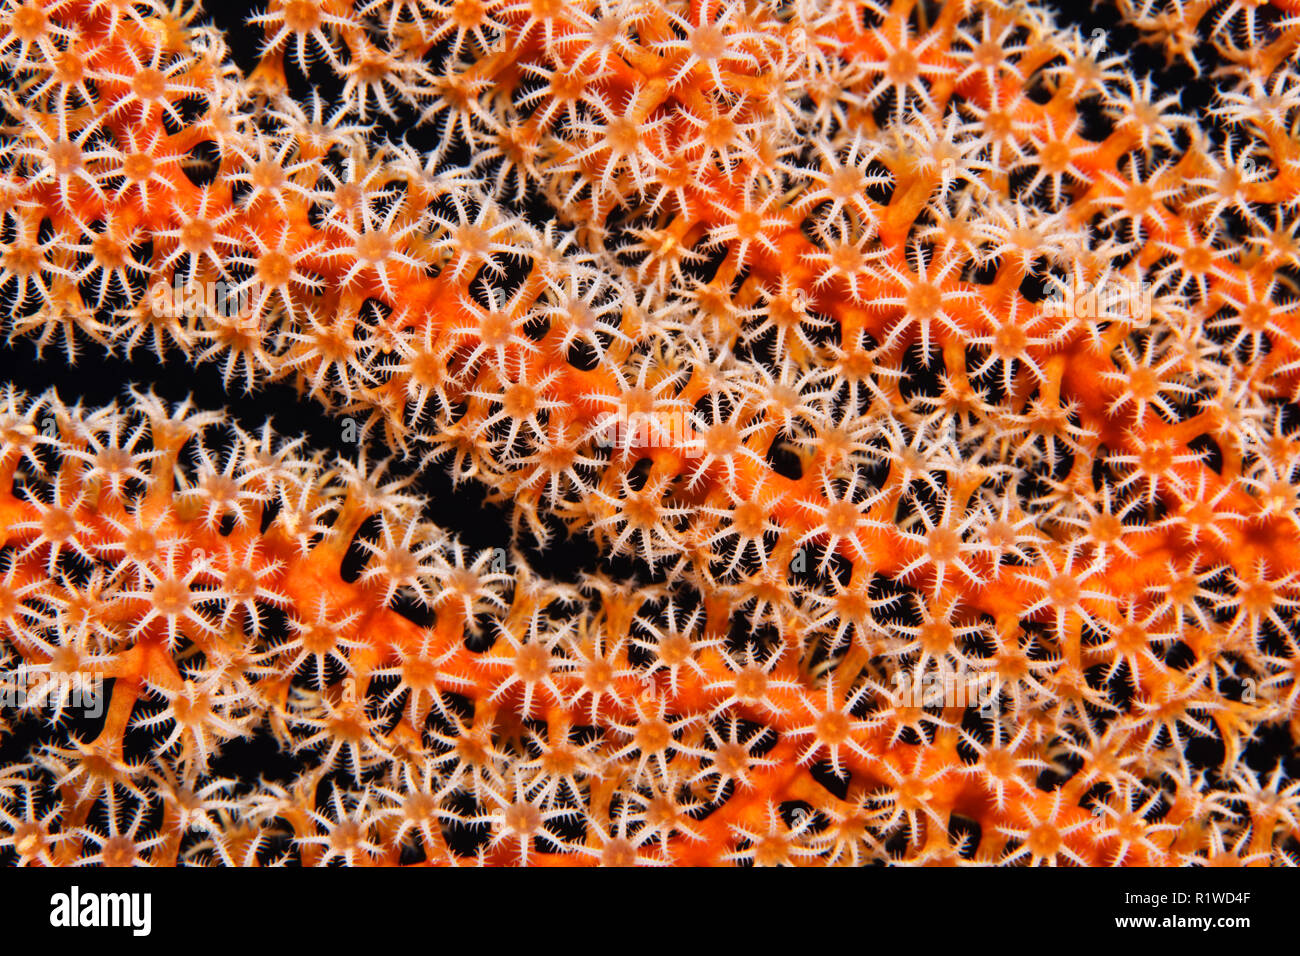 Ventilateur corail, gorgones (Gorgonacea), détail avec ouvrir les polypes coralliens, Selayar Sulawesi du Sud, Pacifique, l'Indonésie Banque D'Images